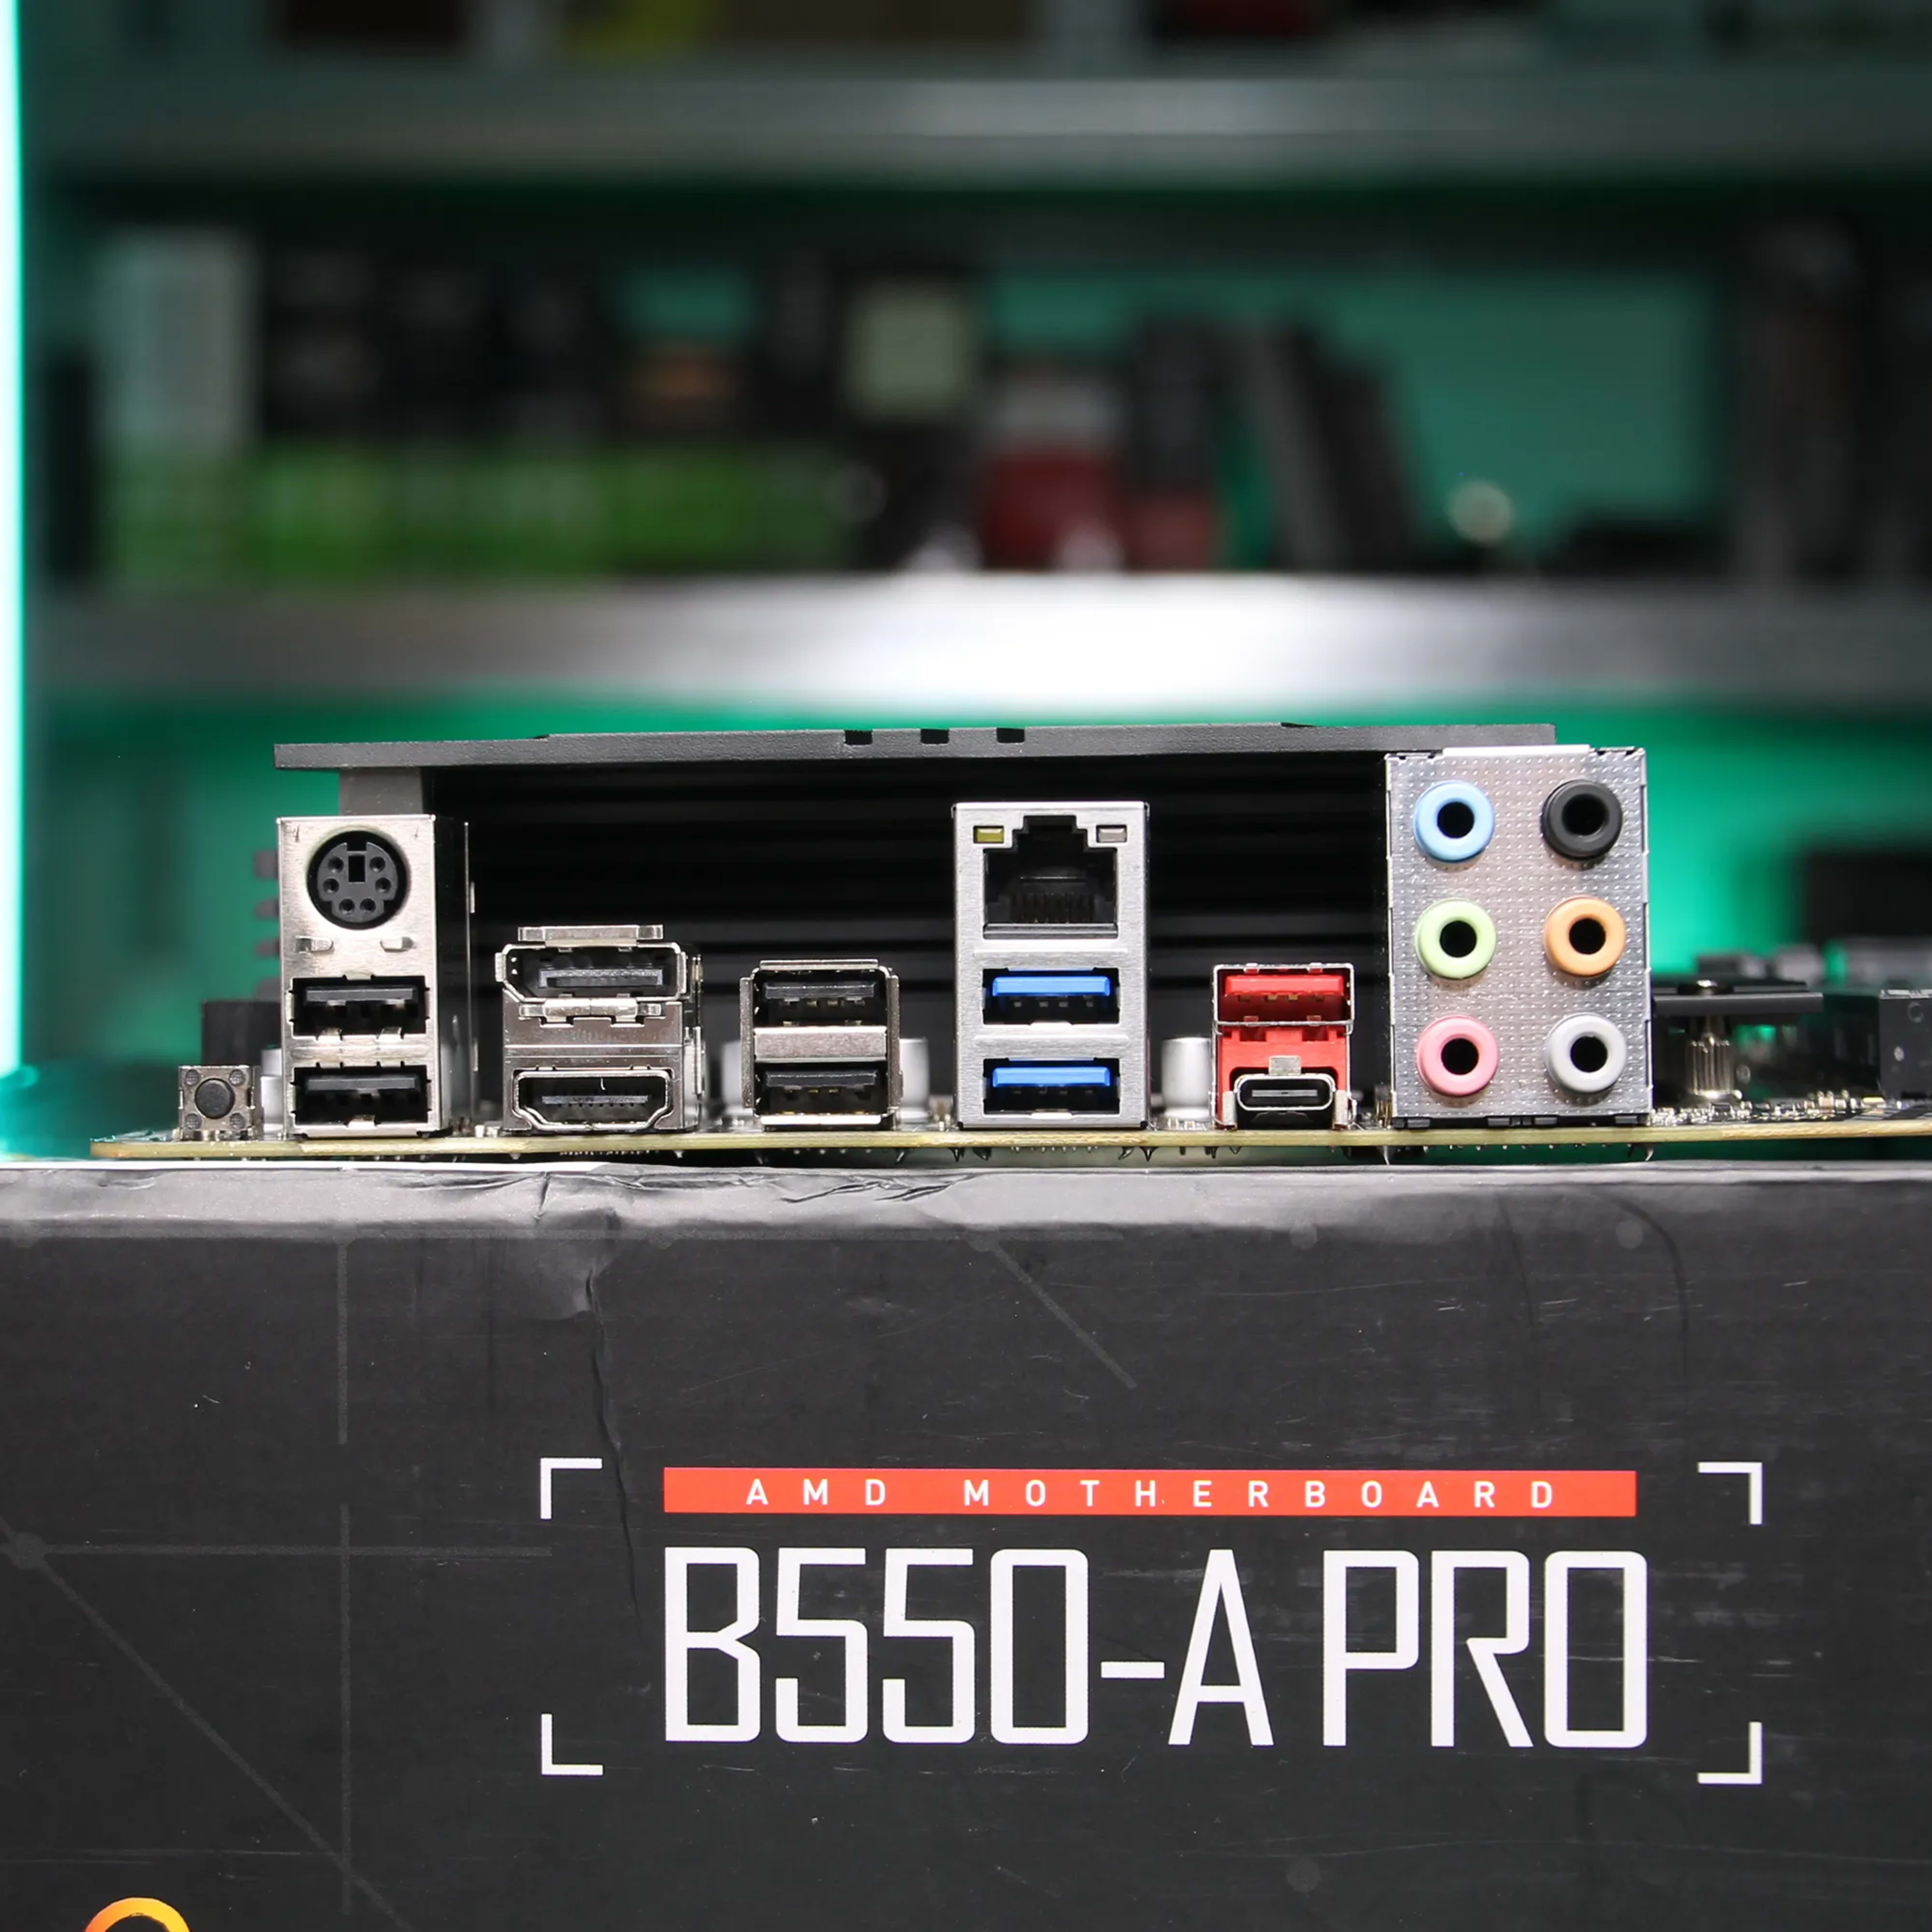 B550-A PRO